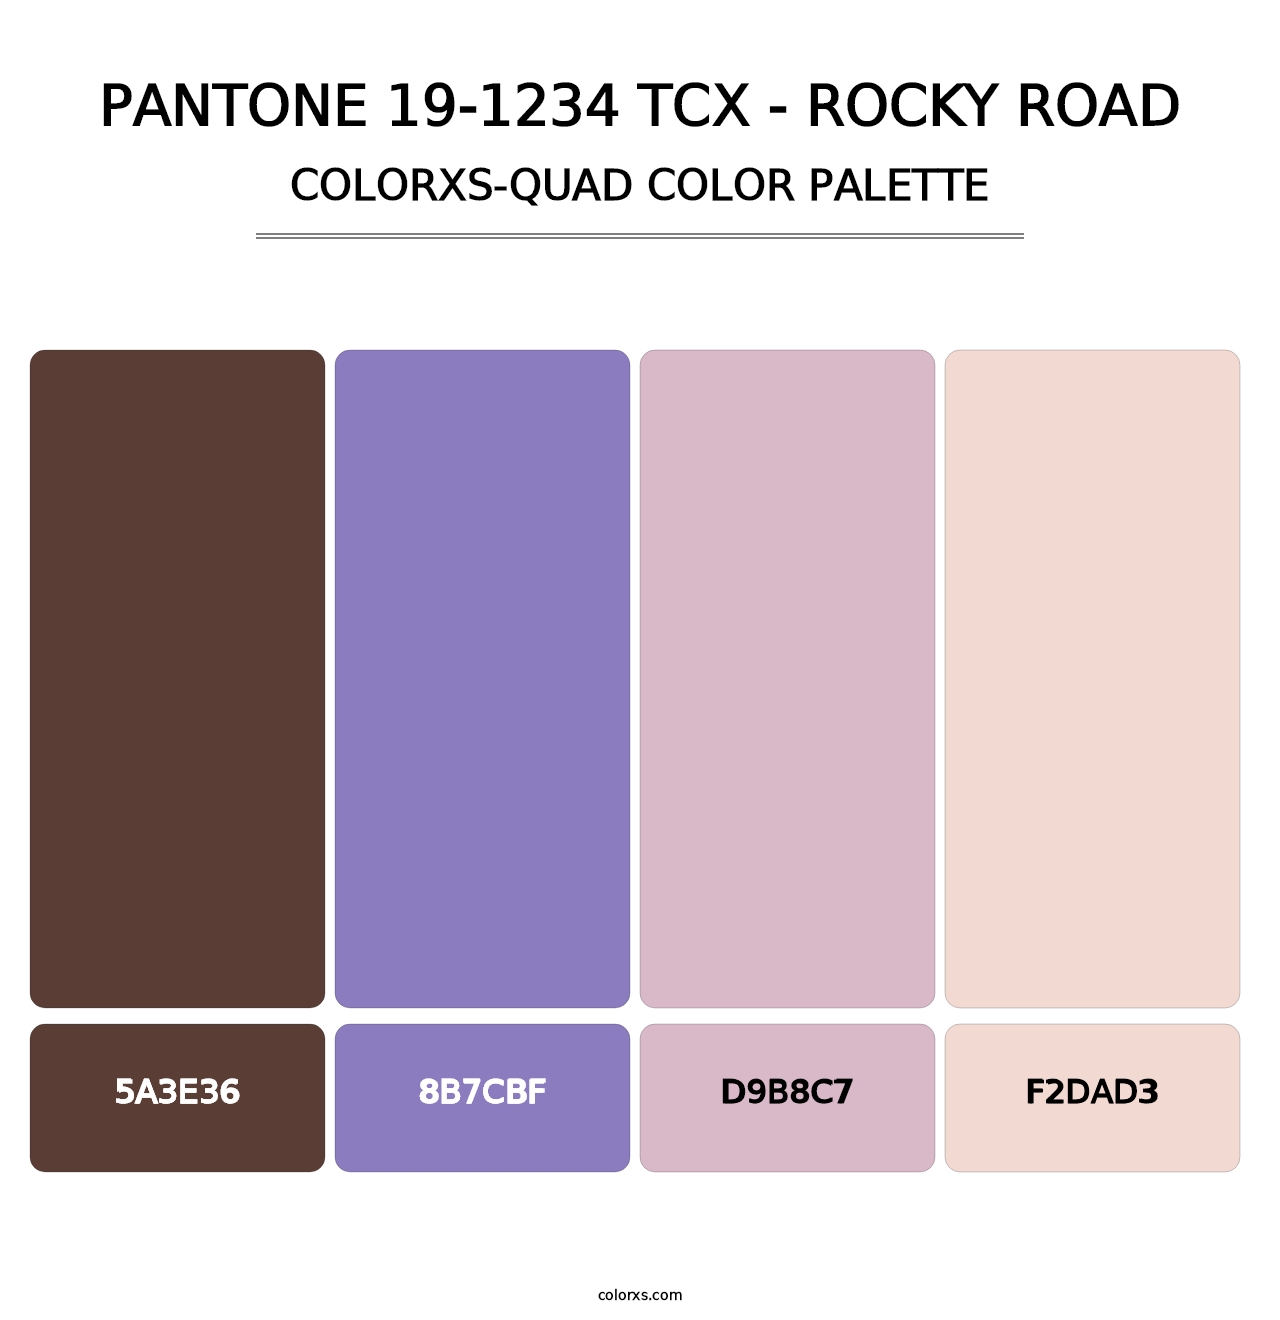 PANTONE 19-1234 TCX - Rocky Road - Colorxs Quad Palette